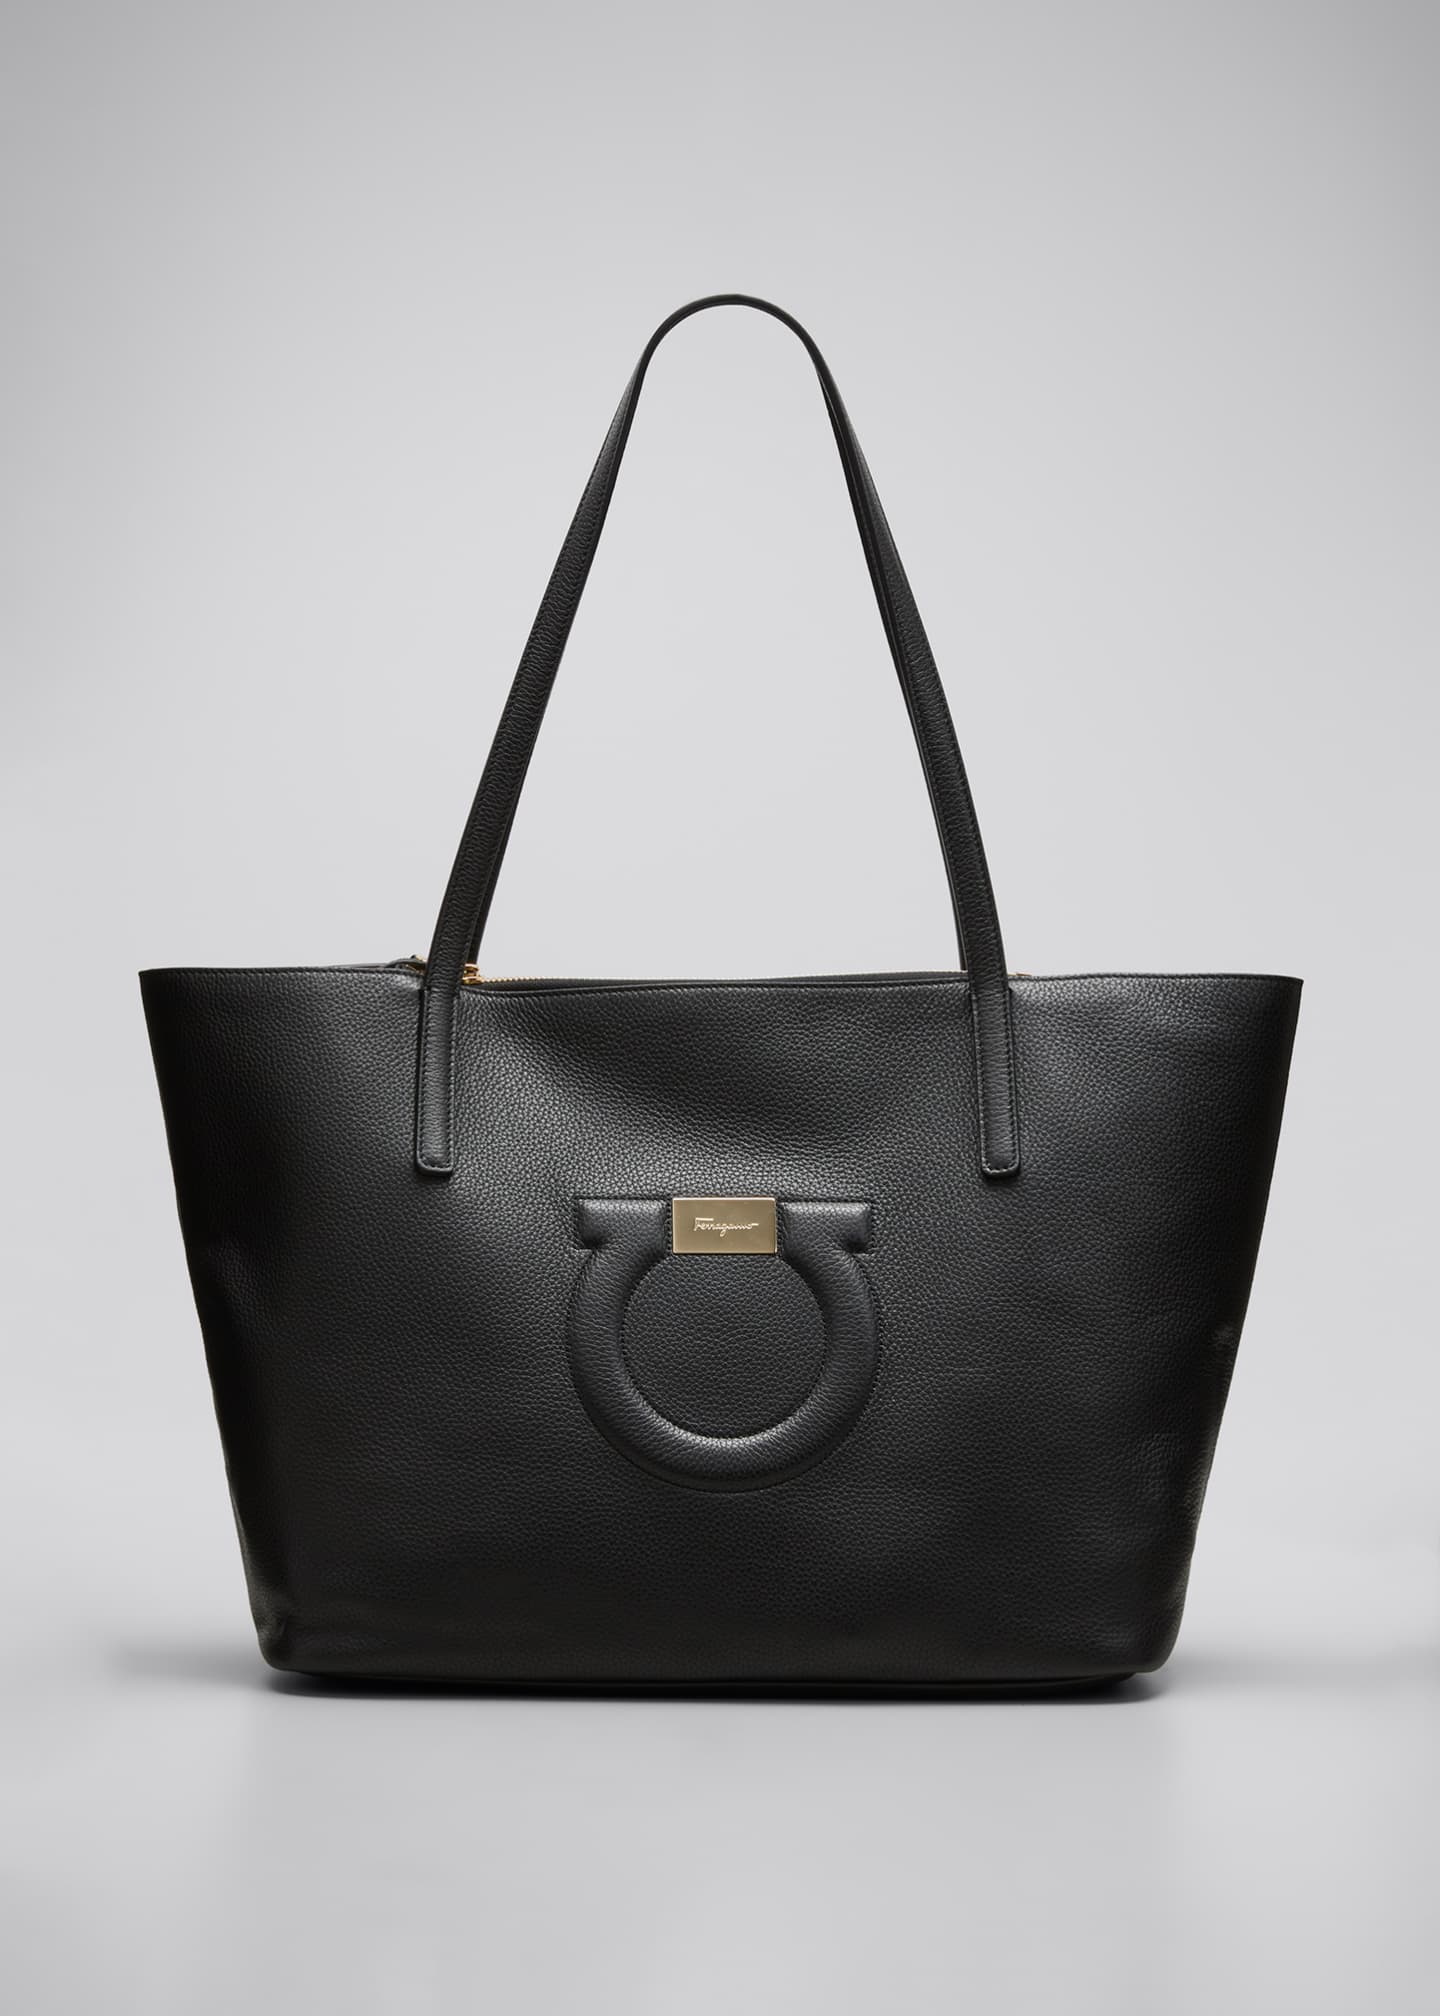 Salvatore Ferragamo City Medium Leather Shoulder Tote Bag - Bergdorf